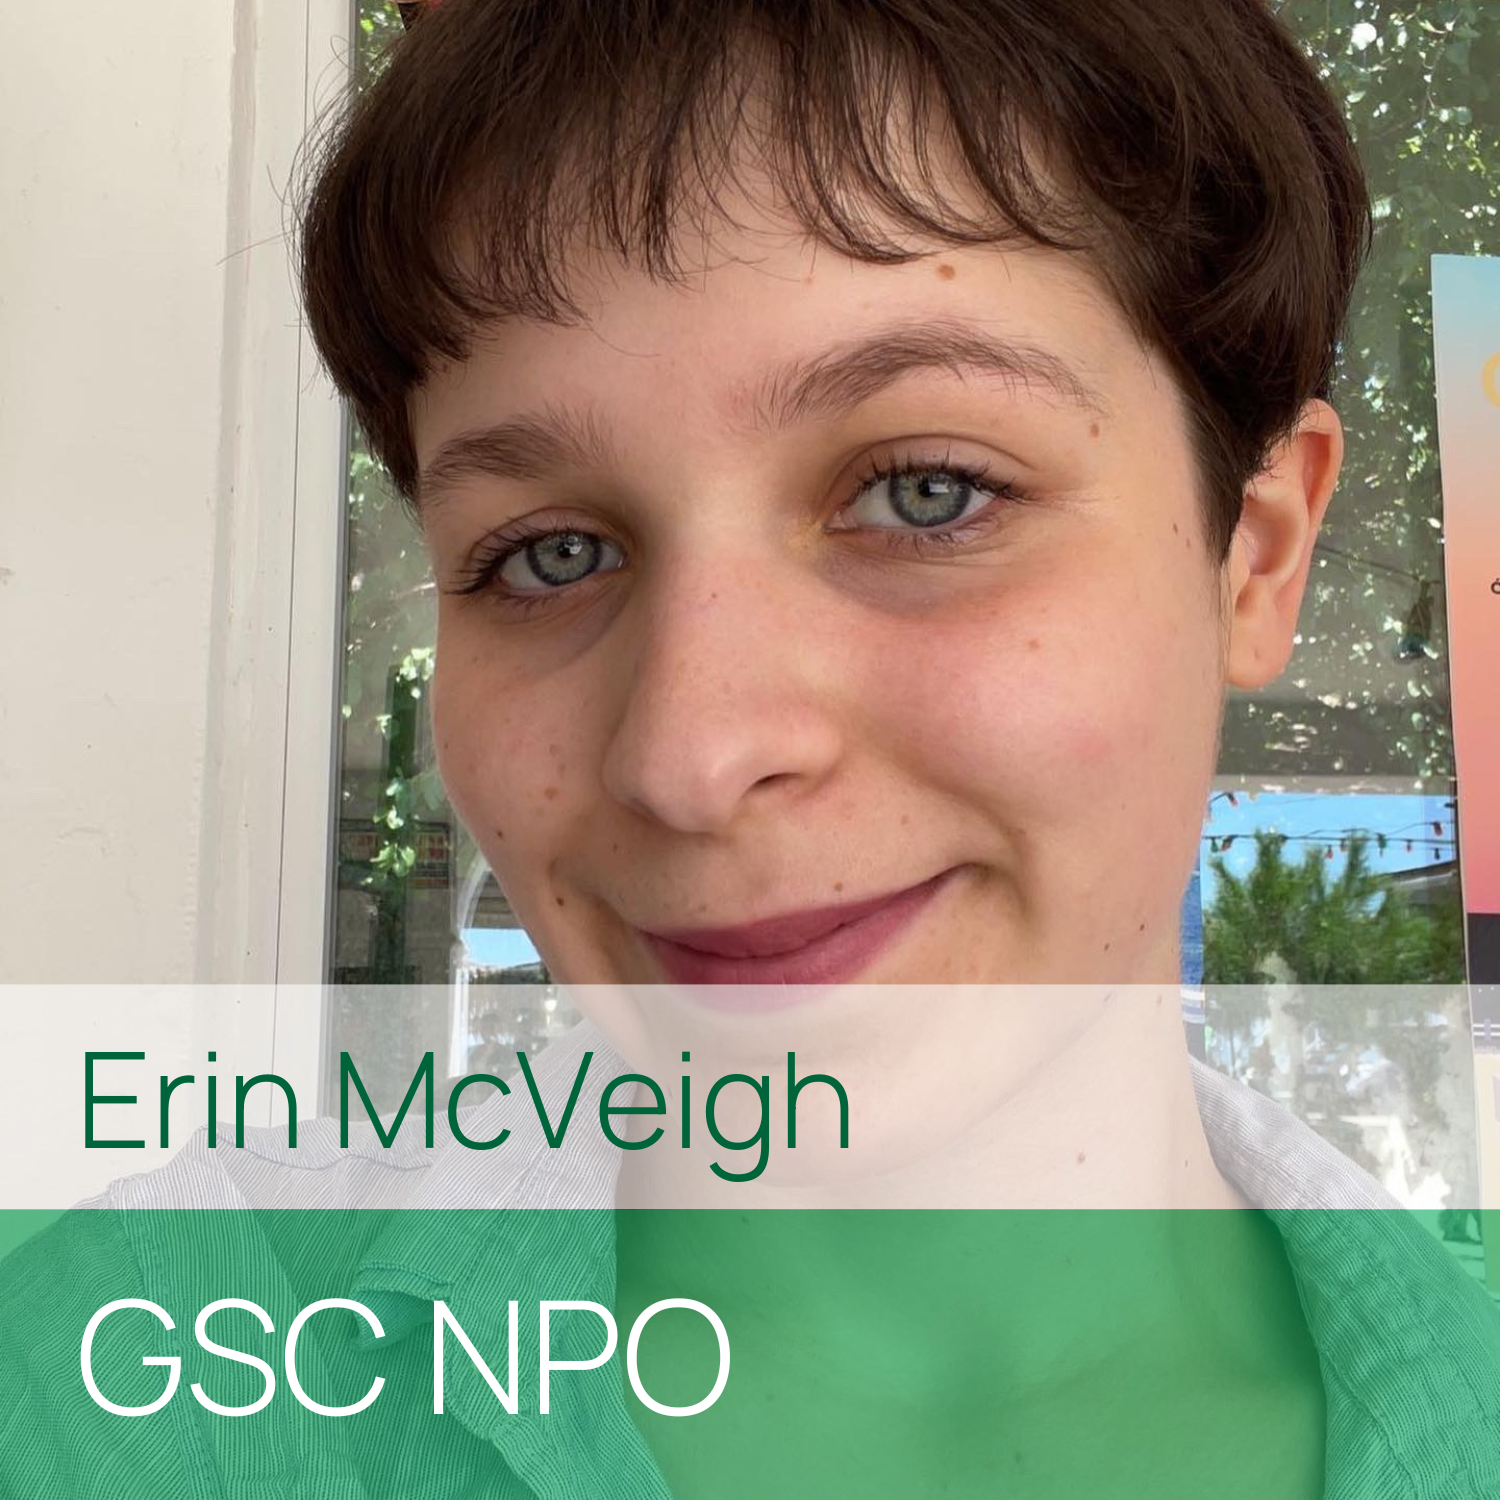 Erin McVeigh, GSC NPO